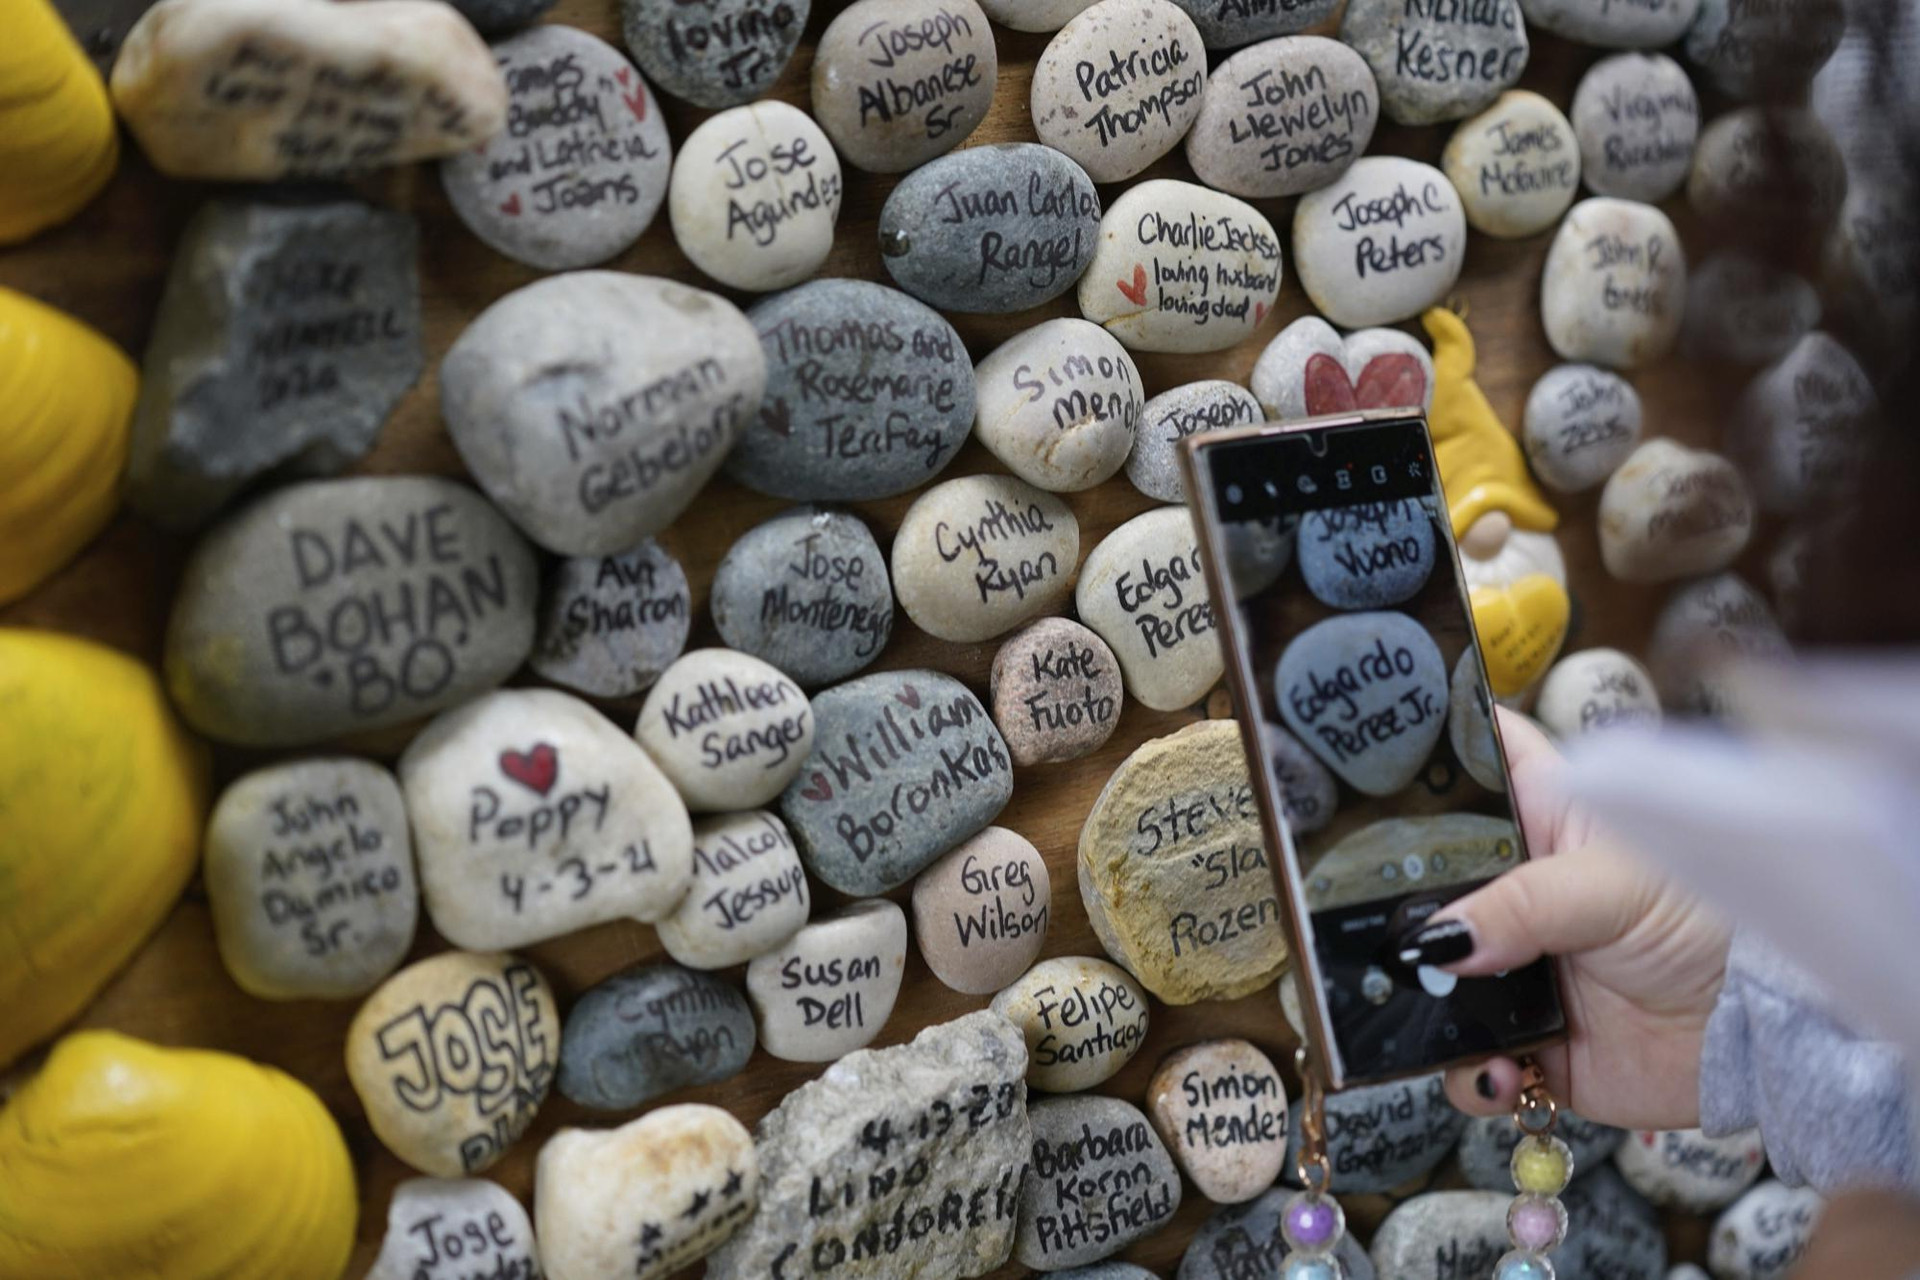 Tên của những nạn nhân được viết tỉ mỉ trên từng viên đá nhỏ